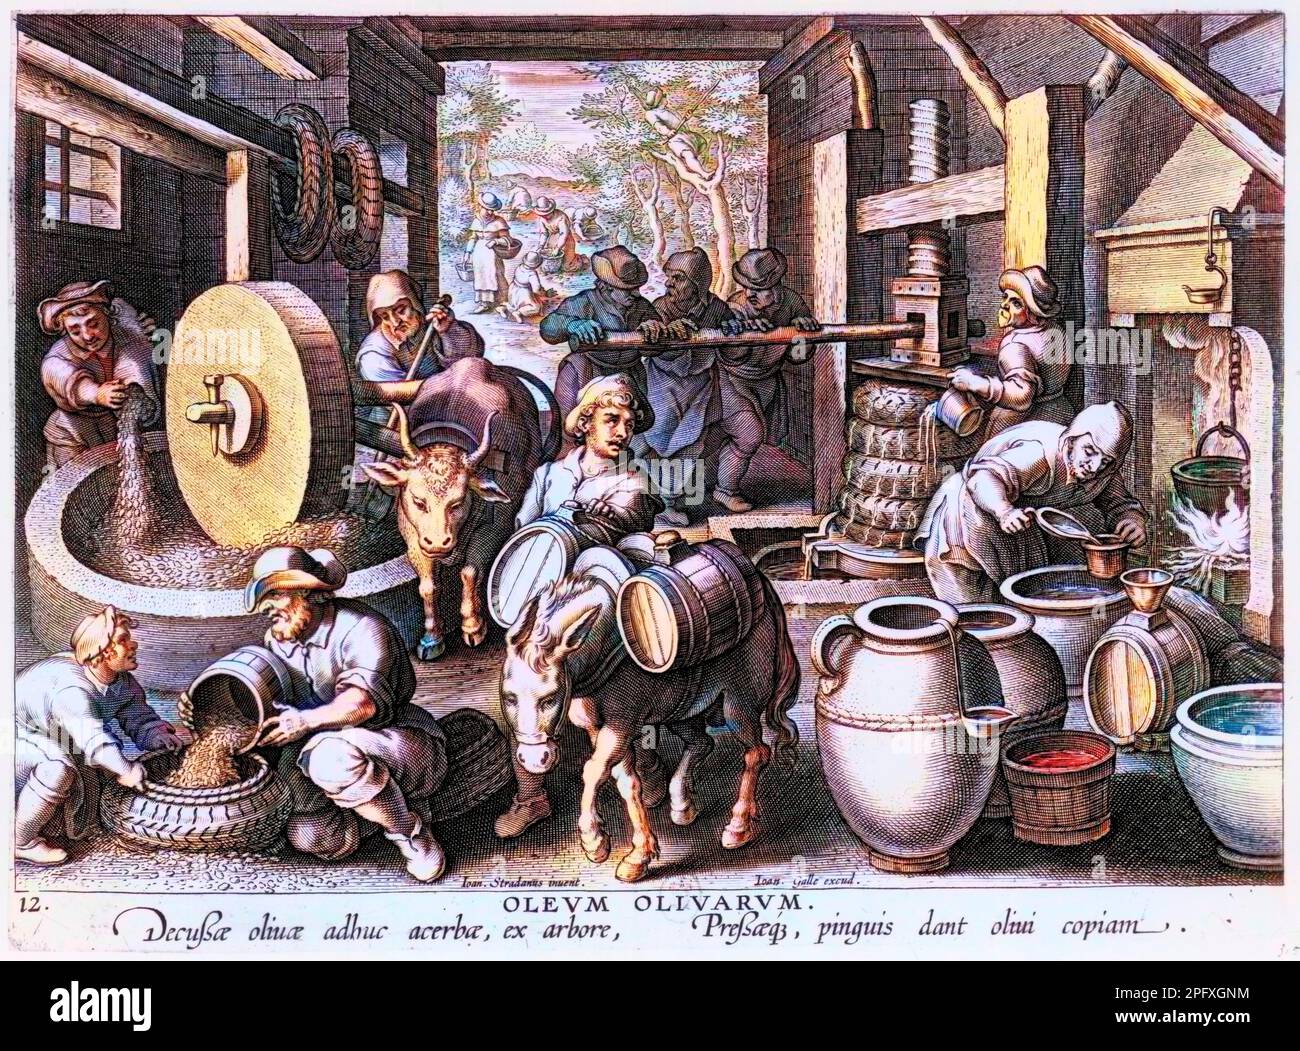 Piastra oleum olivarum da 'e: la fabrication de l'huile d'olive (cueillette, pressage, filtrage, remplissage des tonneaux...) - Gravure flamande, XVIème siècle Foto Stock